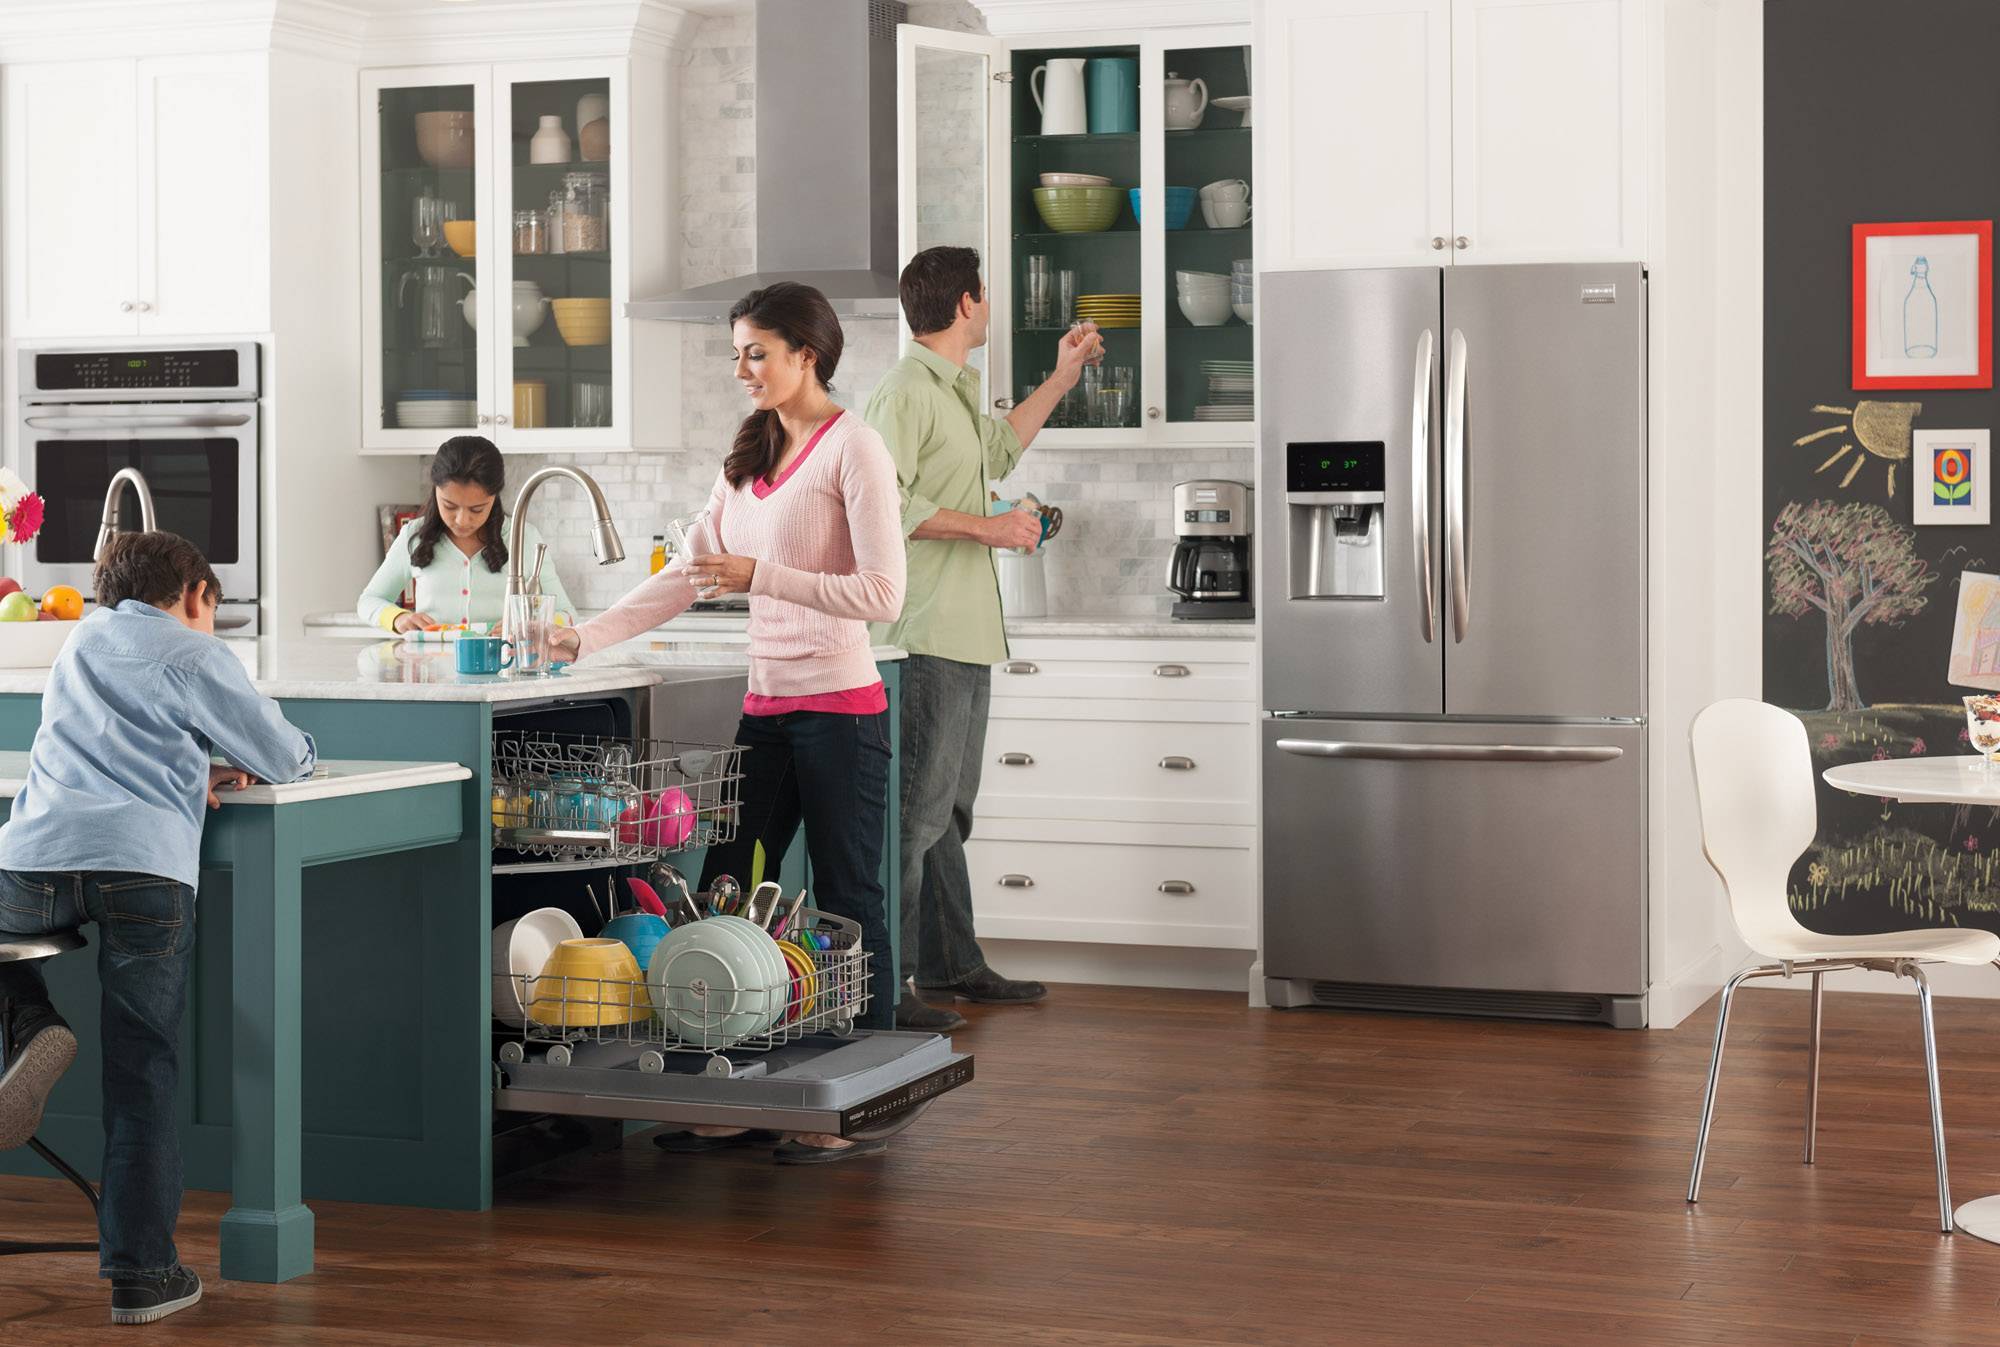 Нужна ли посудомоечная машина: отзывы владельцев, плюсы и минусы, за и против, для семьи из 2 человек, на кухне, 3, недостатки, проблемы, в доме горячая вода, зачем